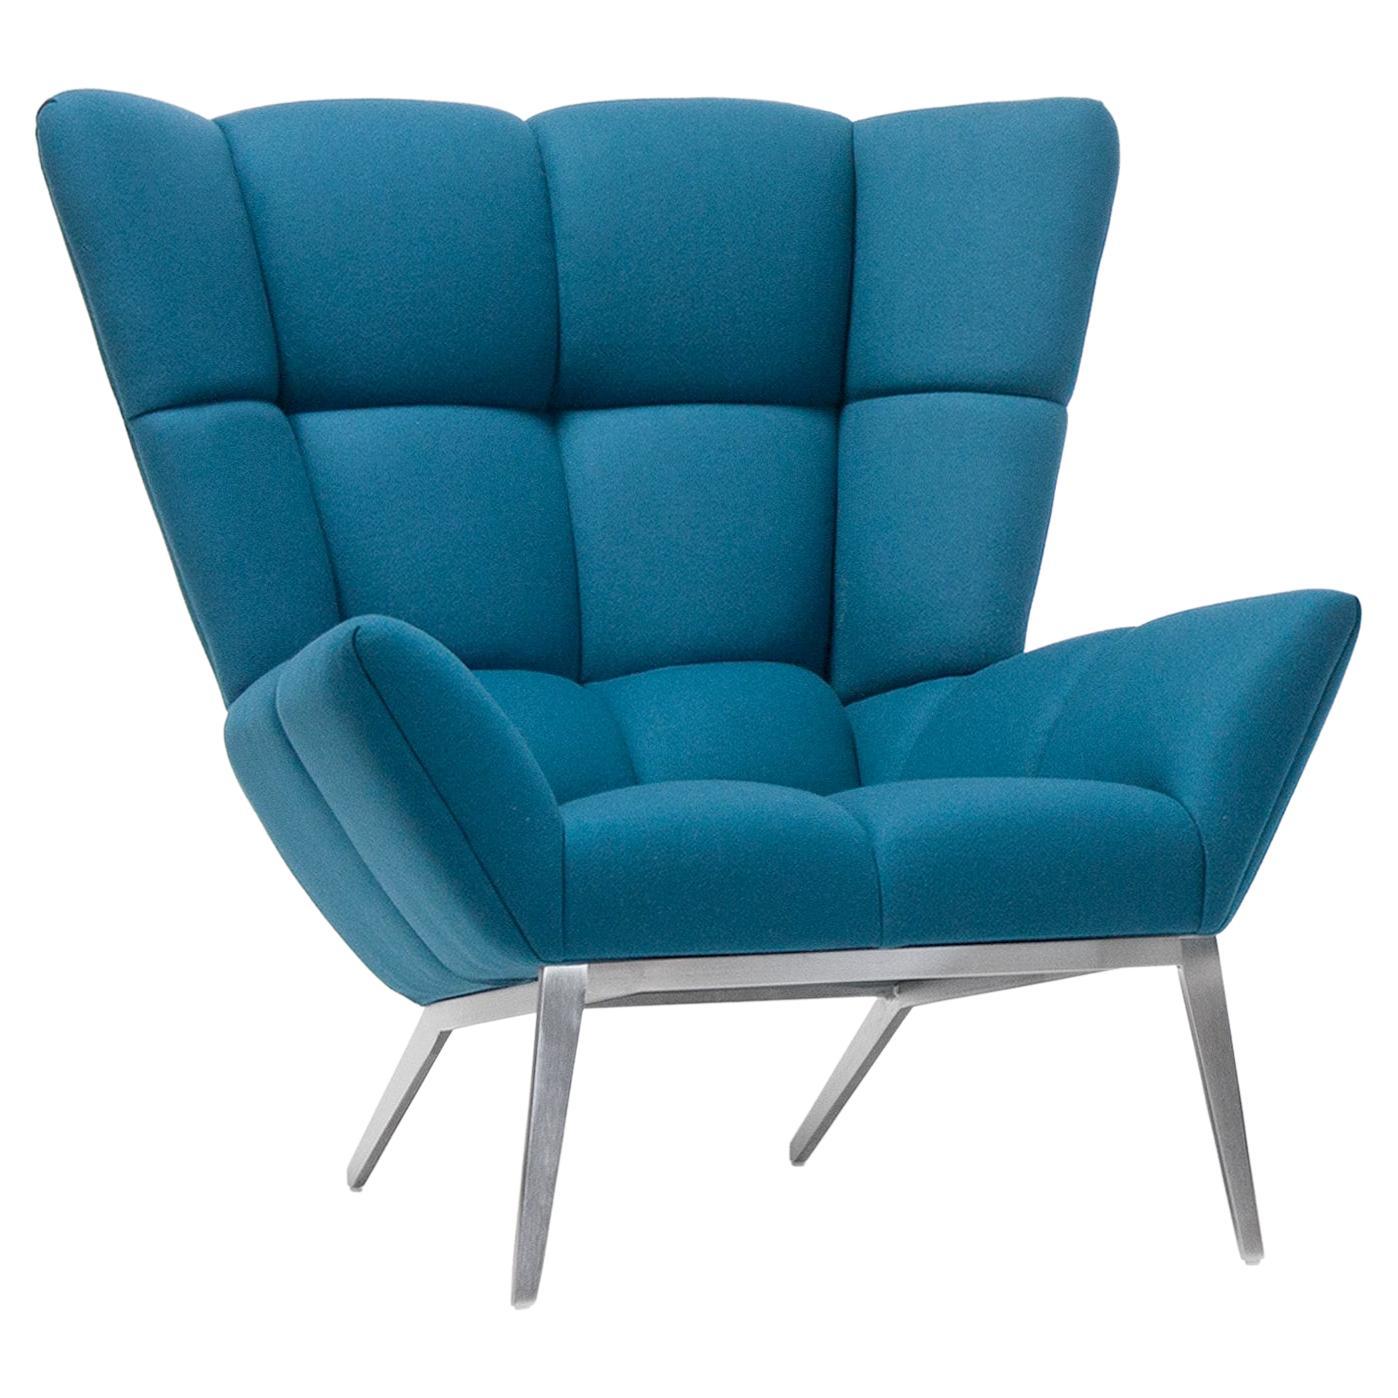 Vioski fauteuil de salon Tuulla touffeté bleu turquoise, style moderne du nouveau siècle